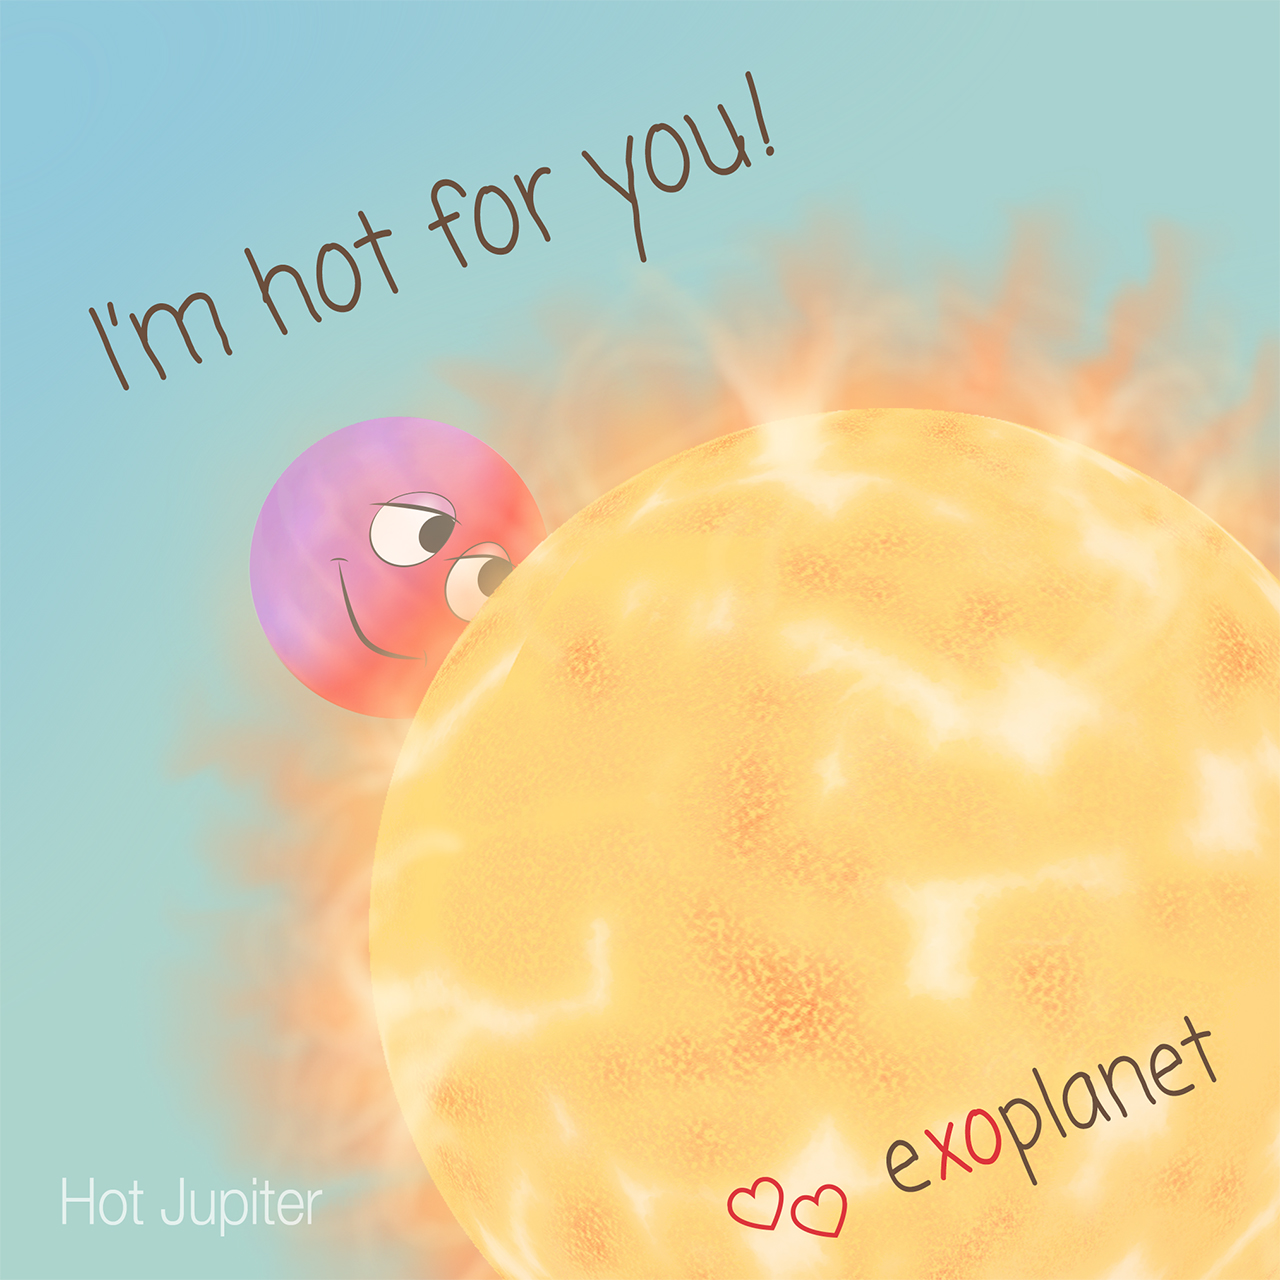 A Valentine for a Hot Jupiter